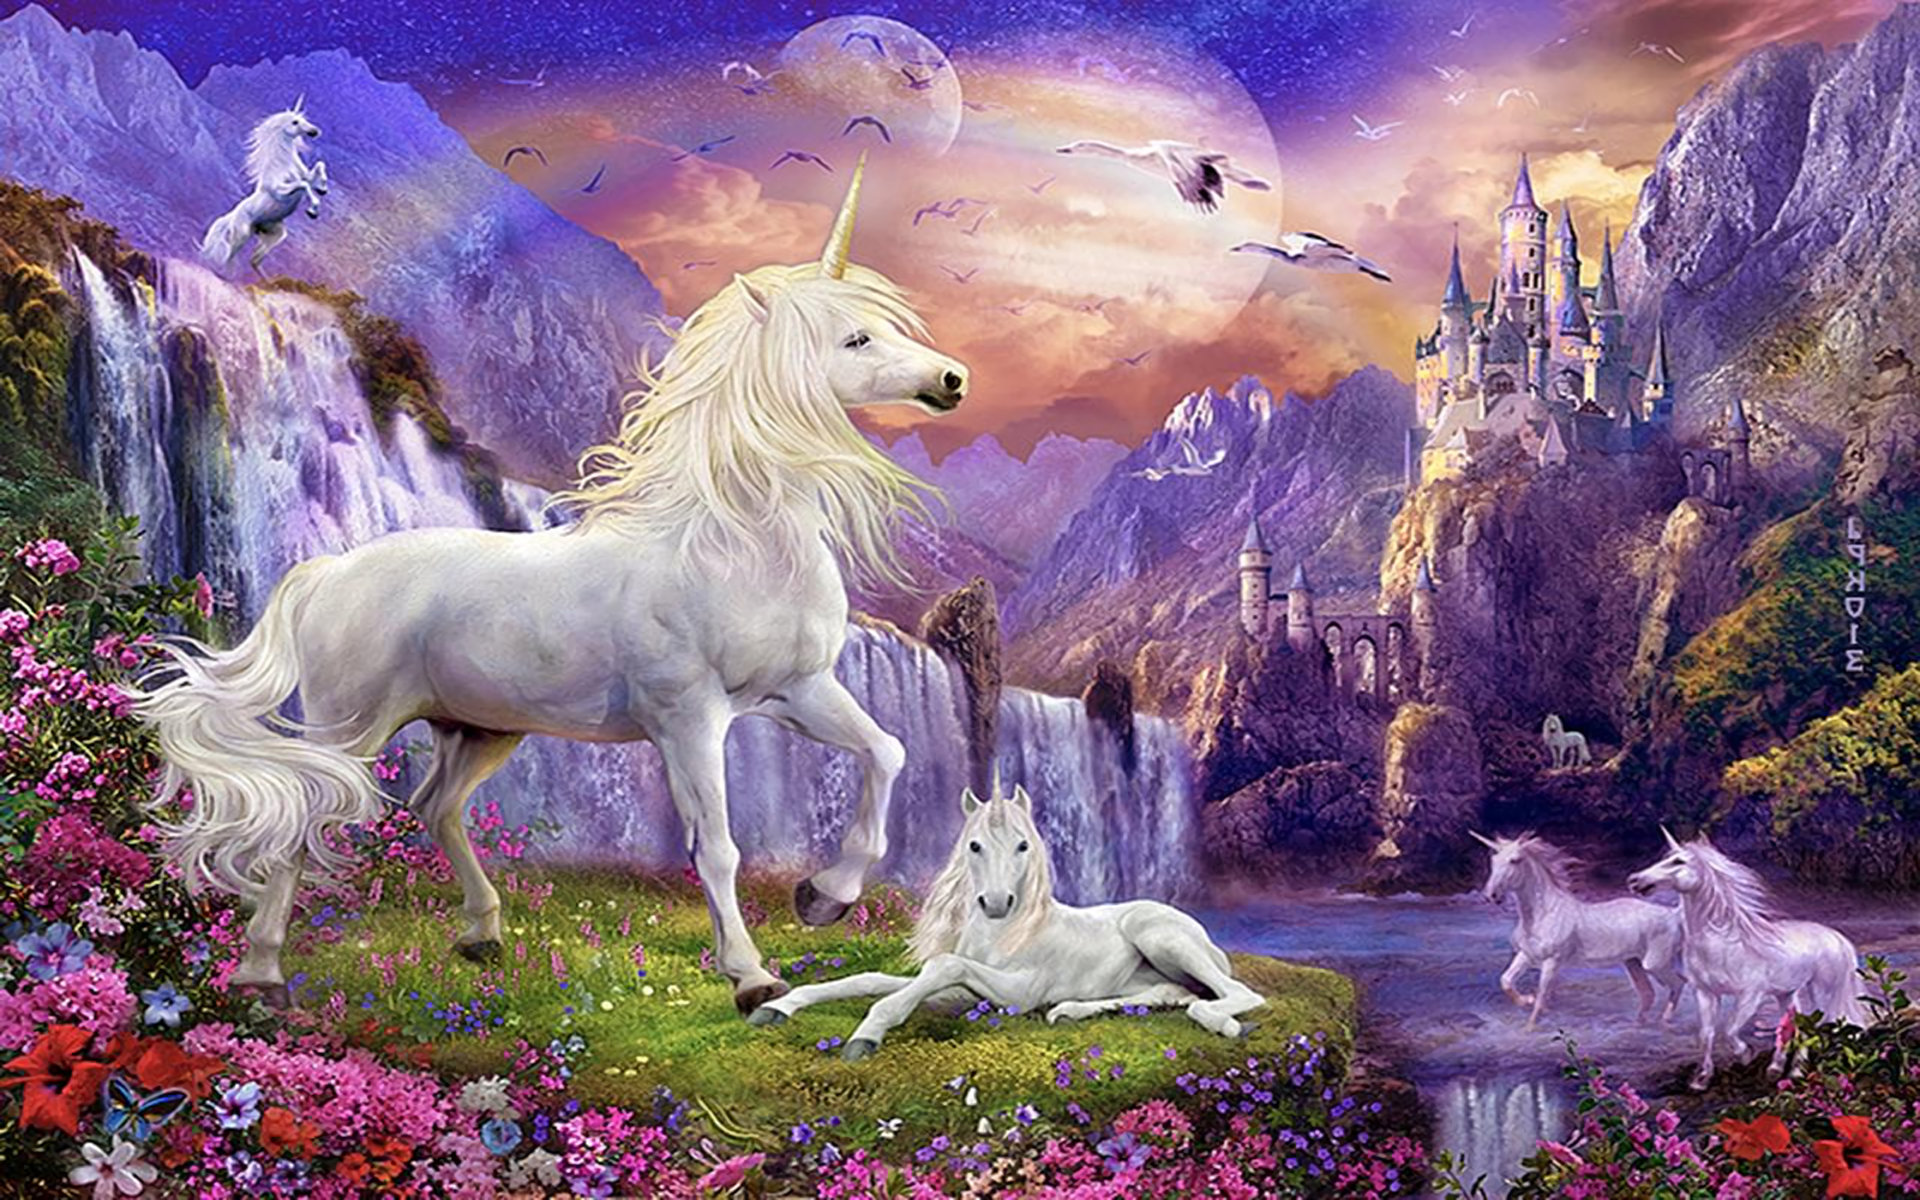 unicorno wallpaper hd,personaggio fittizio,unicorno,creatura mitica,mitologia,pittura